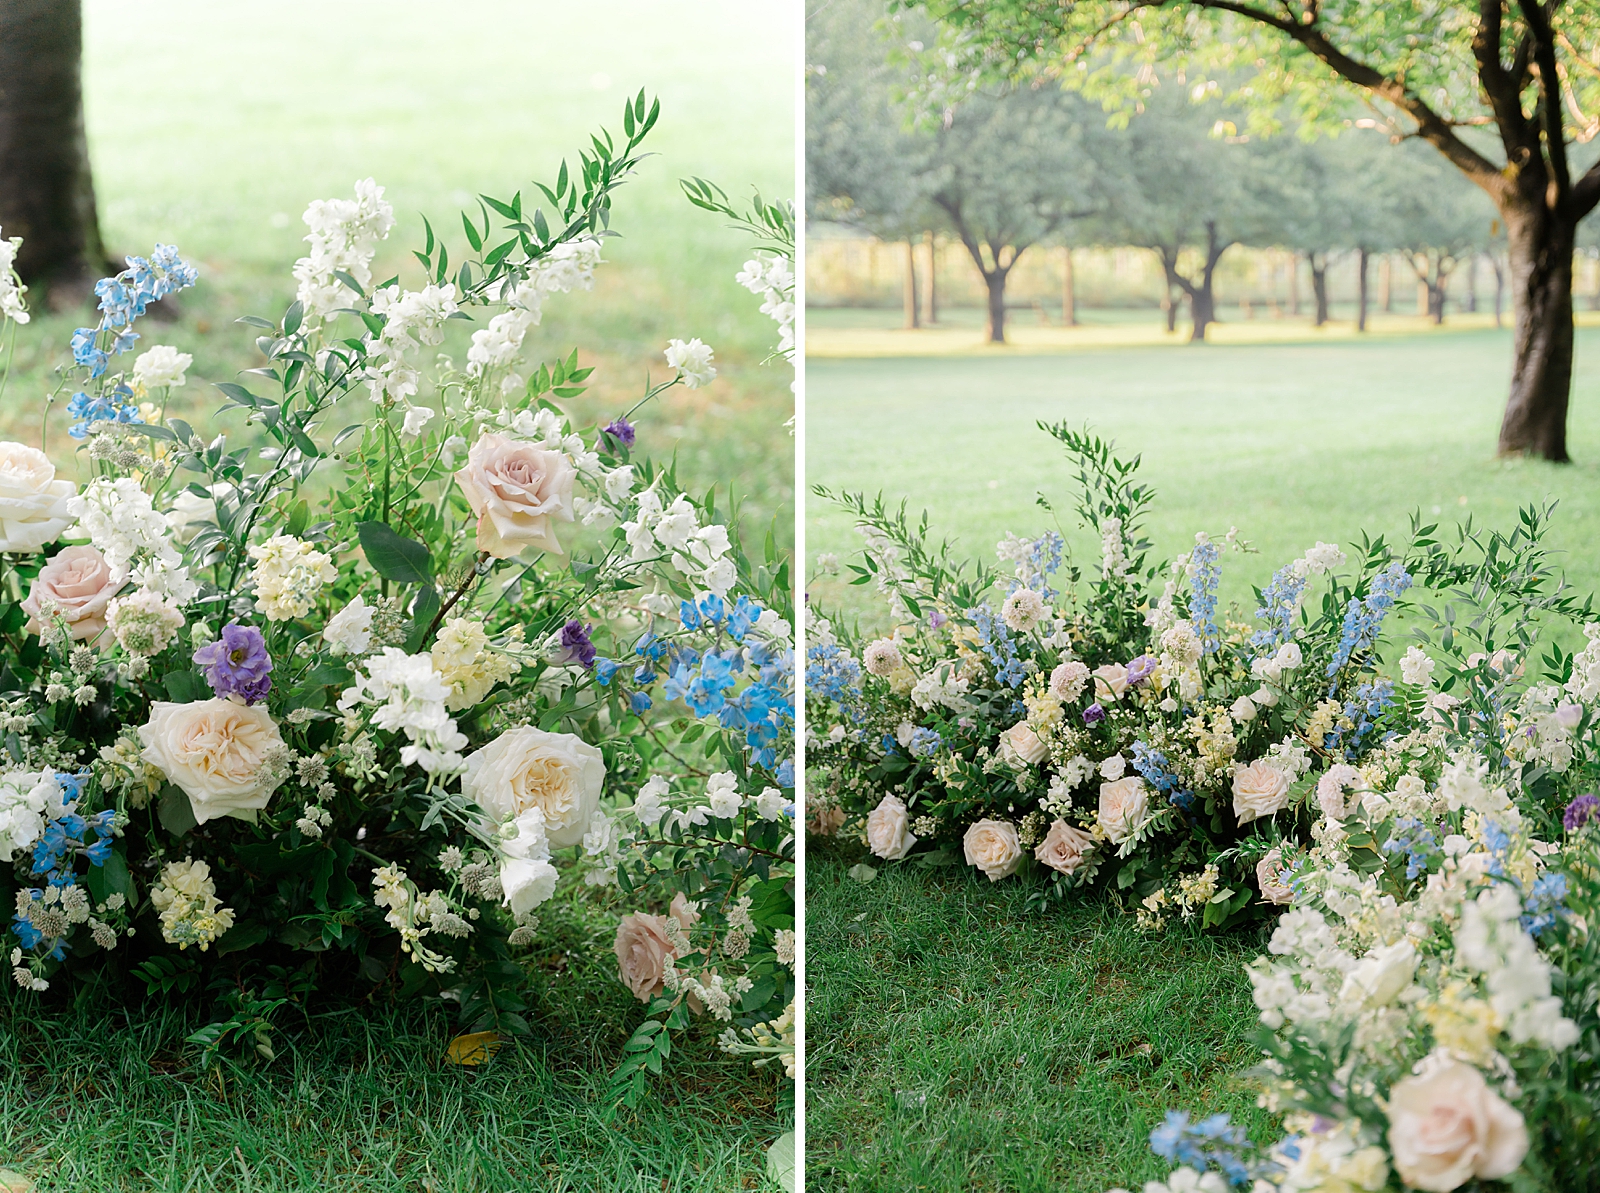 Left photo: Shot of floral arrangement.
Right photo: Shot of floral arrangement.